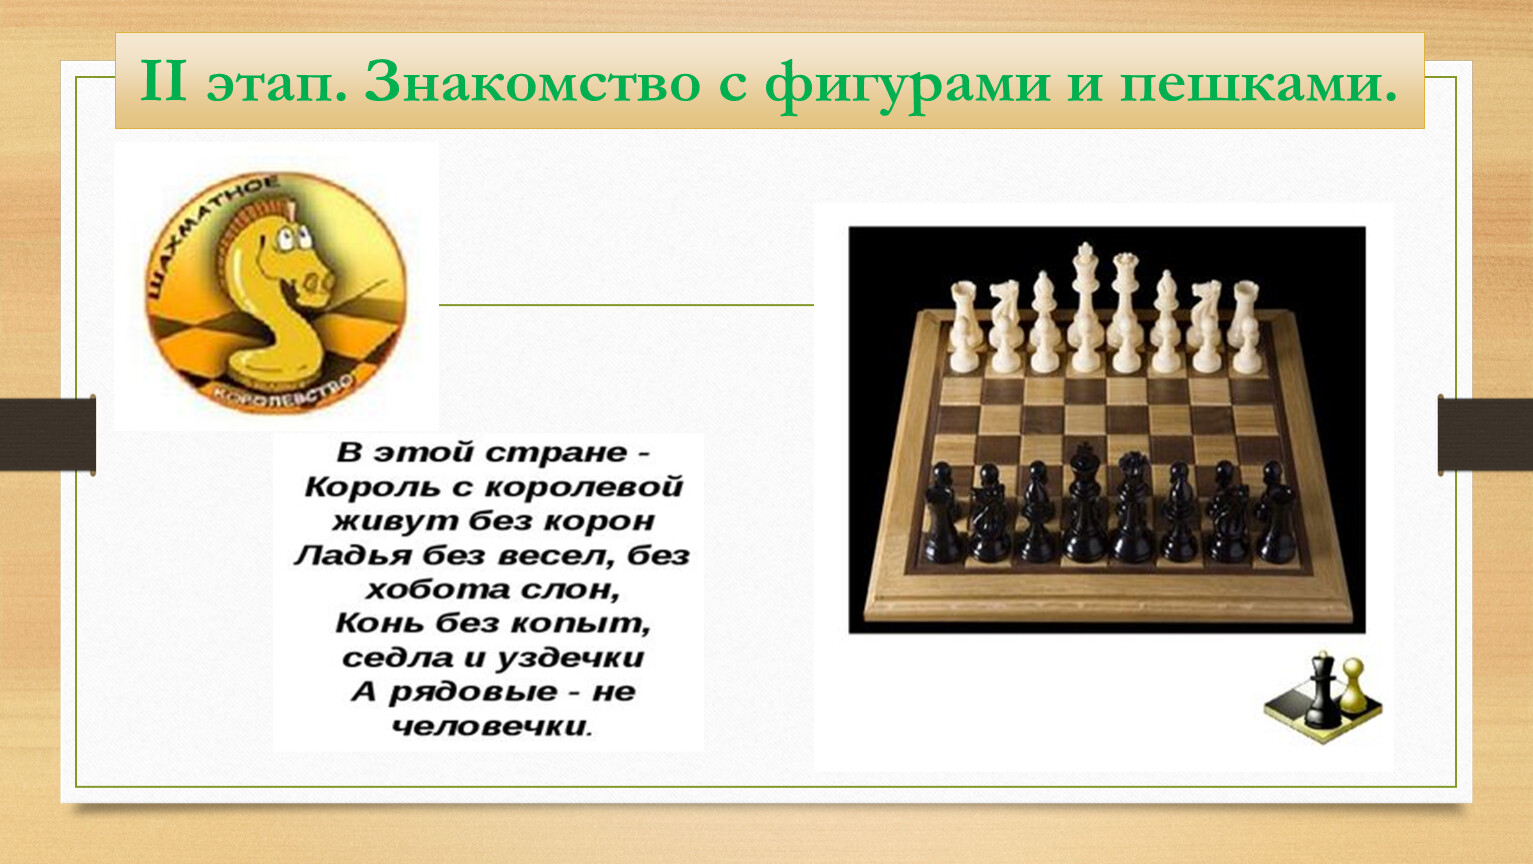 Может ли король рубить. История шахмат. Название фигур в шахматах. Беседа с детьми на тему шахмат. Доклад на тему шахматы.